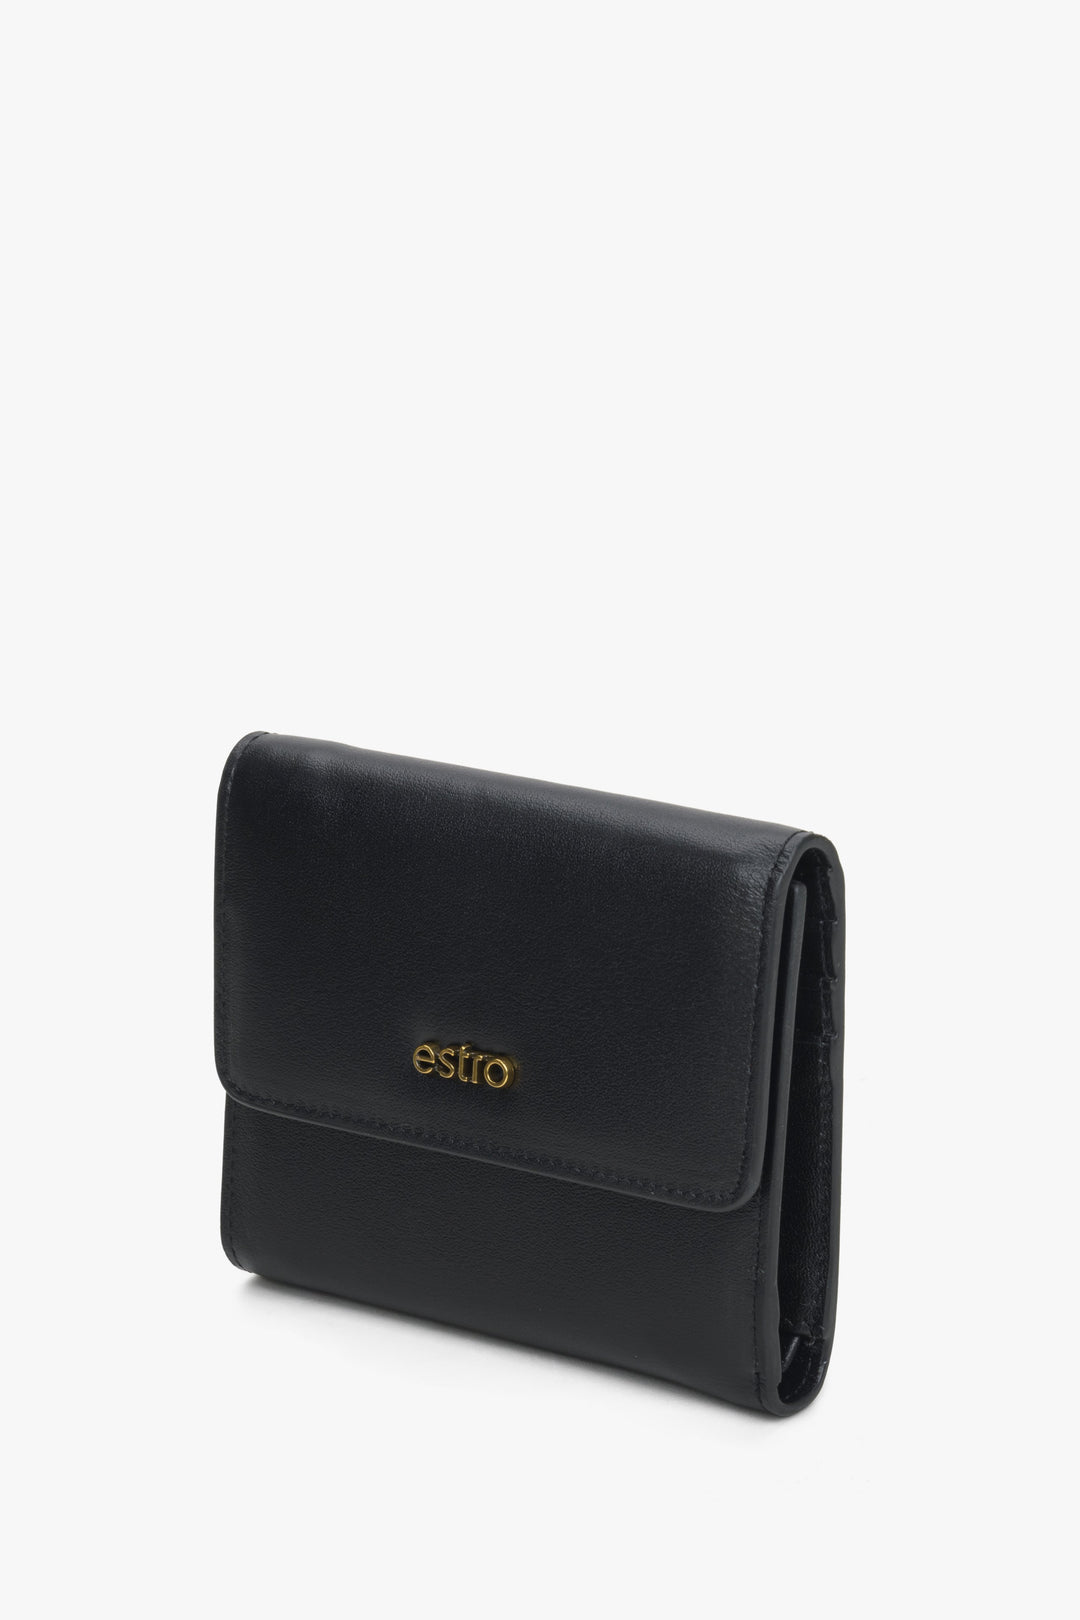 A handy black women's wallet by Estro.